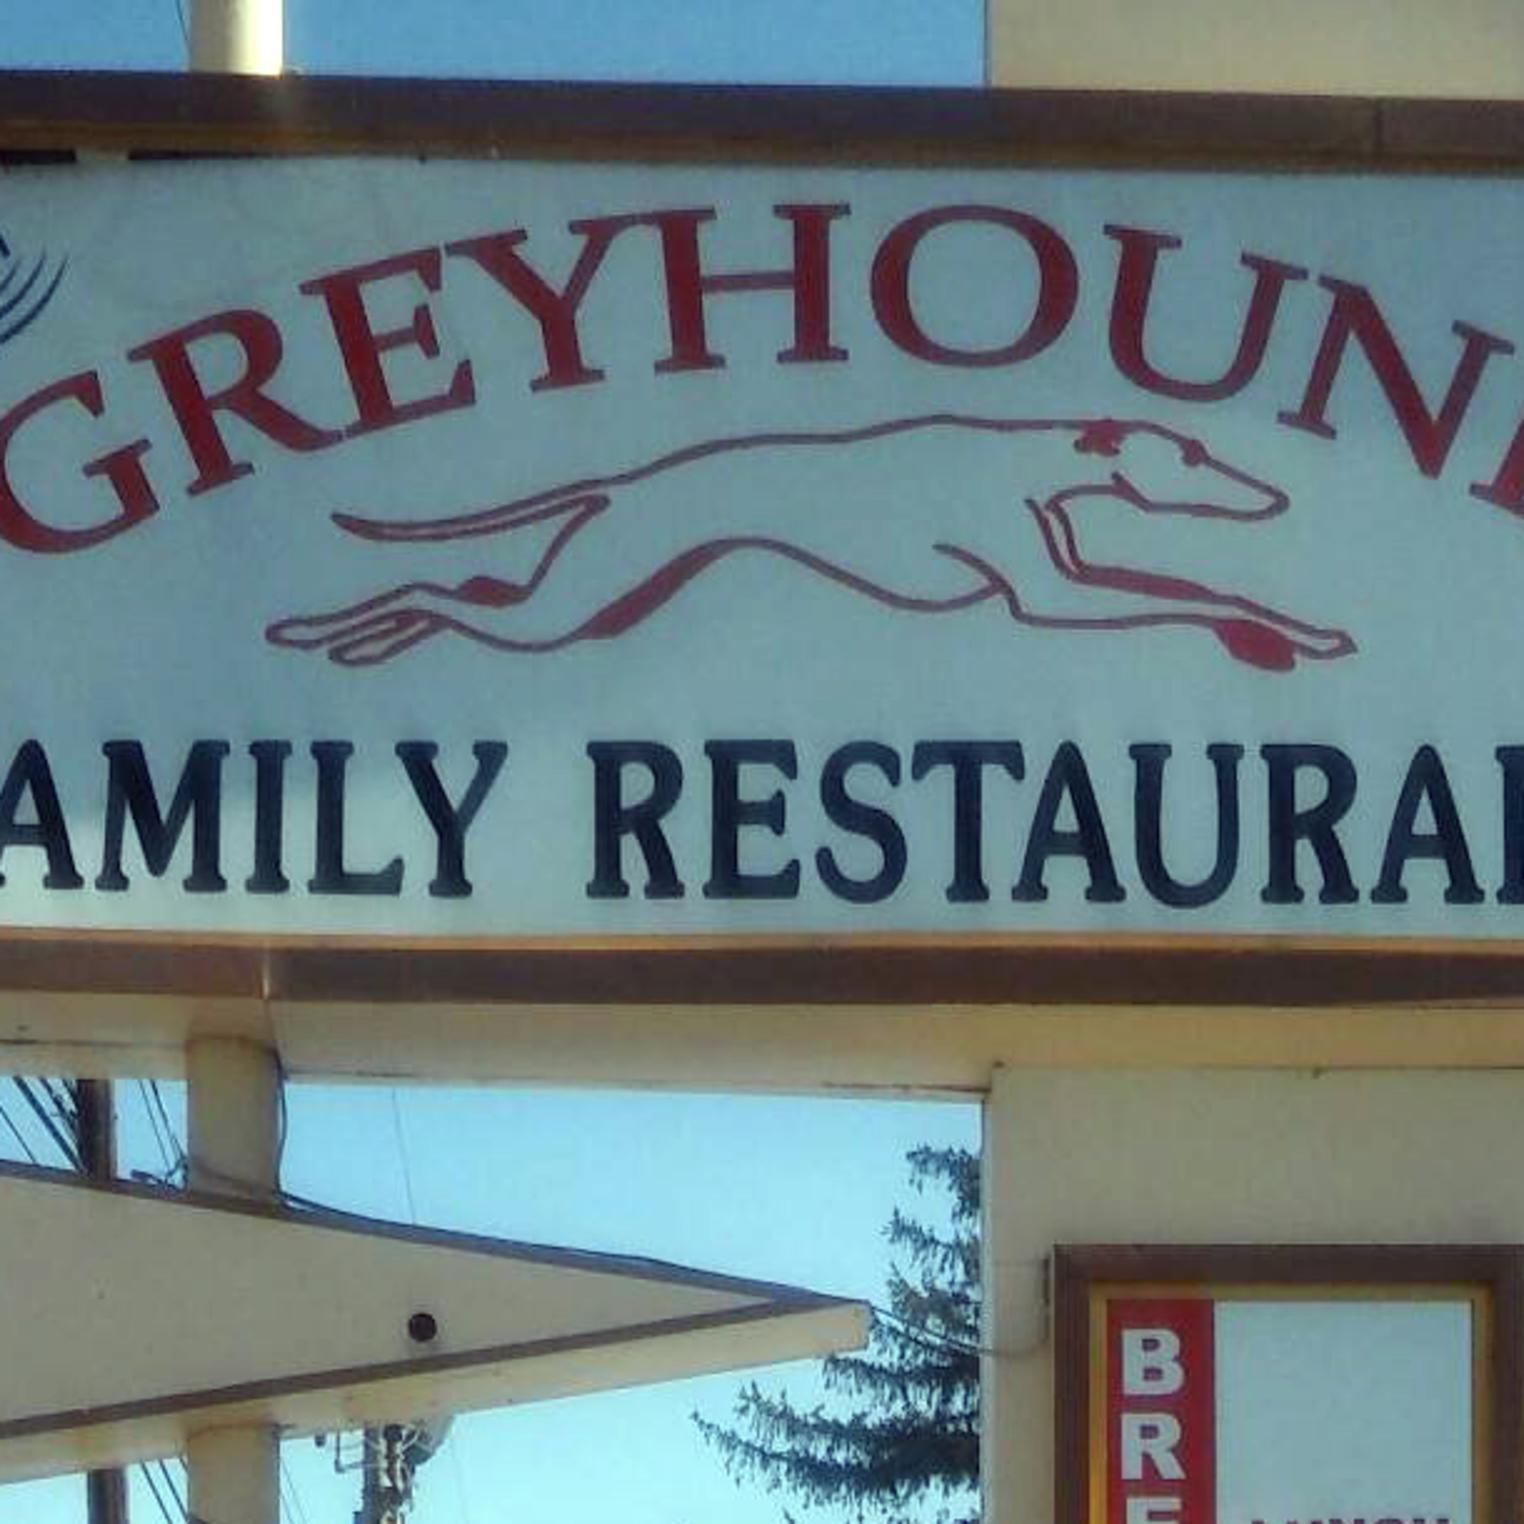 The Greyhound Diner